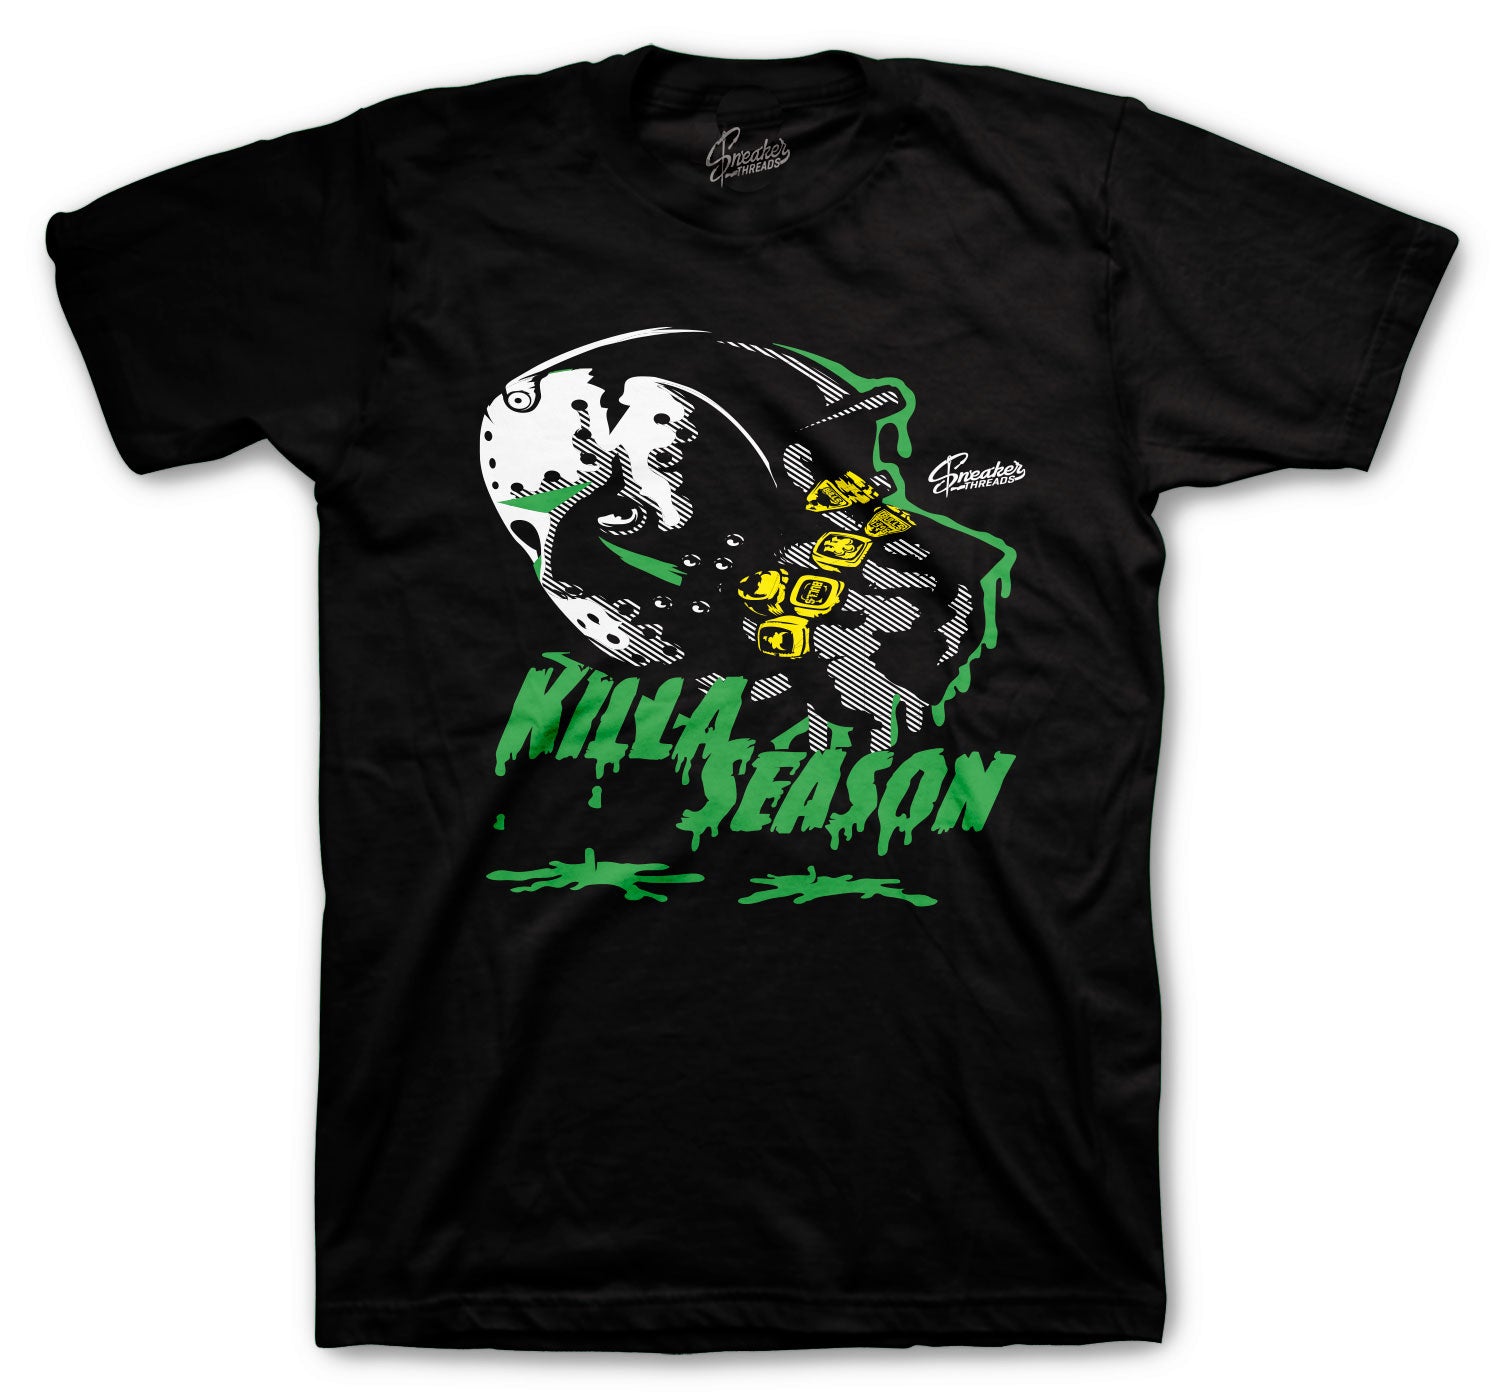 Retro 5 Oregon Shirt - Killa Season - Black